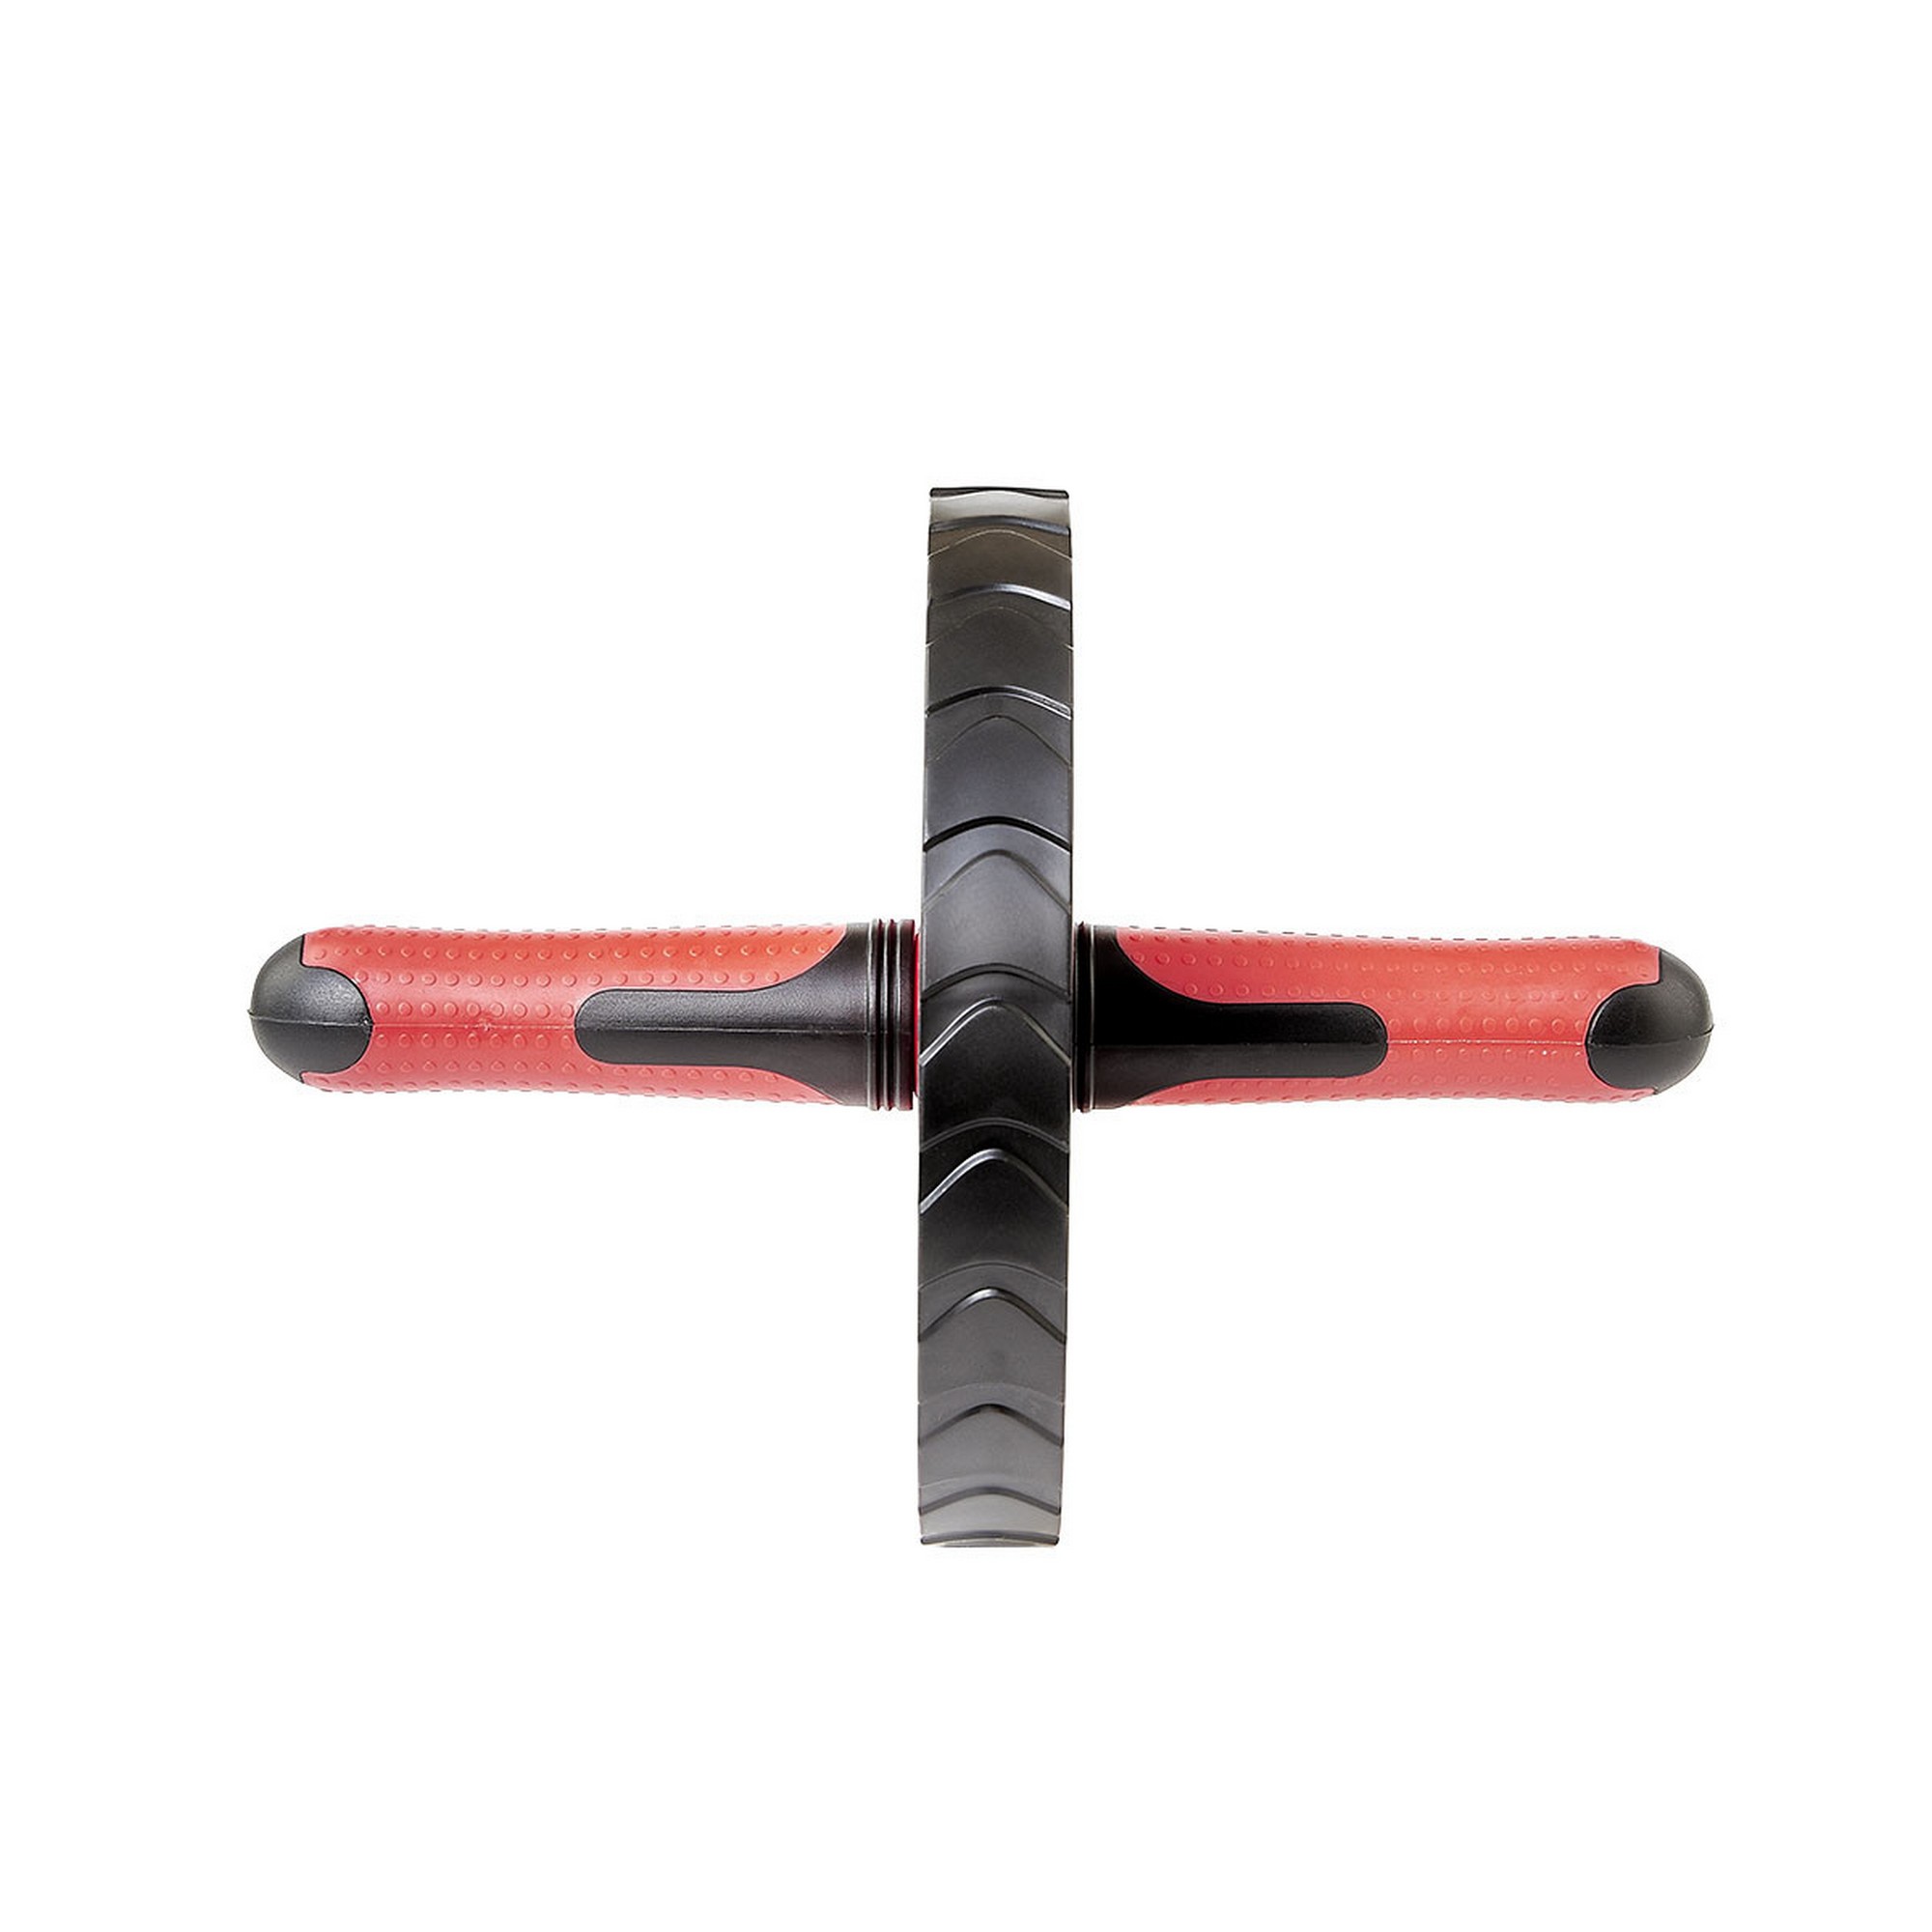 Ролик гимнастический Torres металл, пластик, нескользящий протектор PL5012 красно-черный 2000_2000